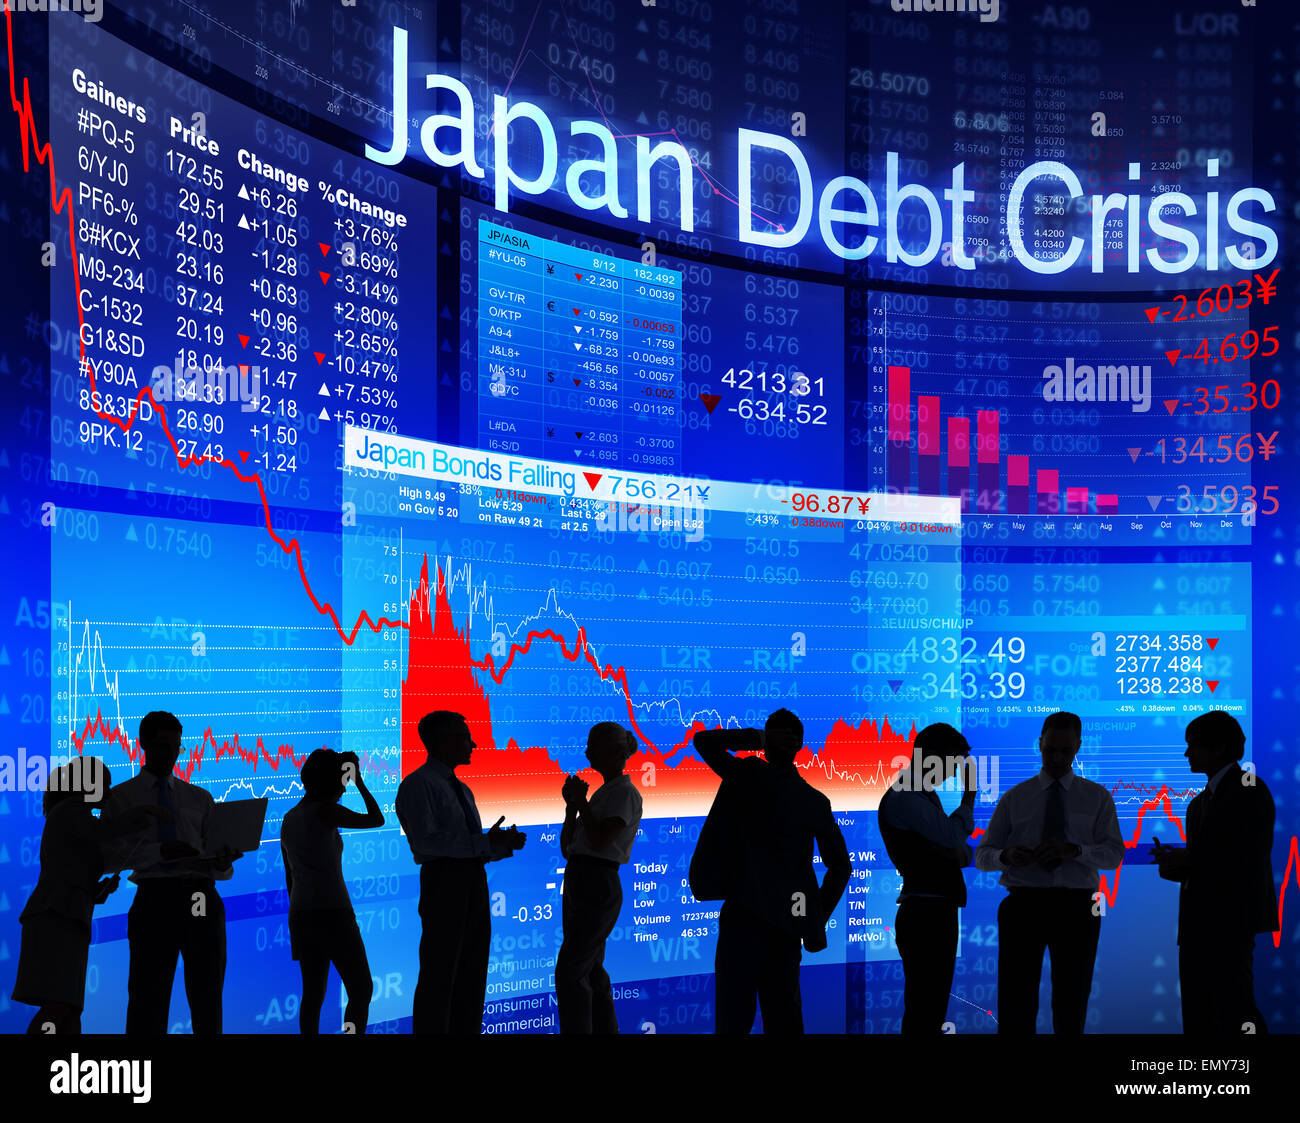 Japan Debt Crisis Stock Photo